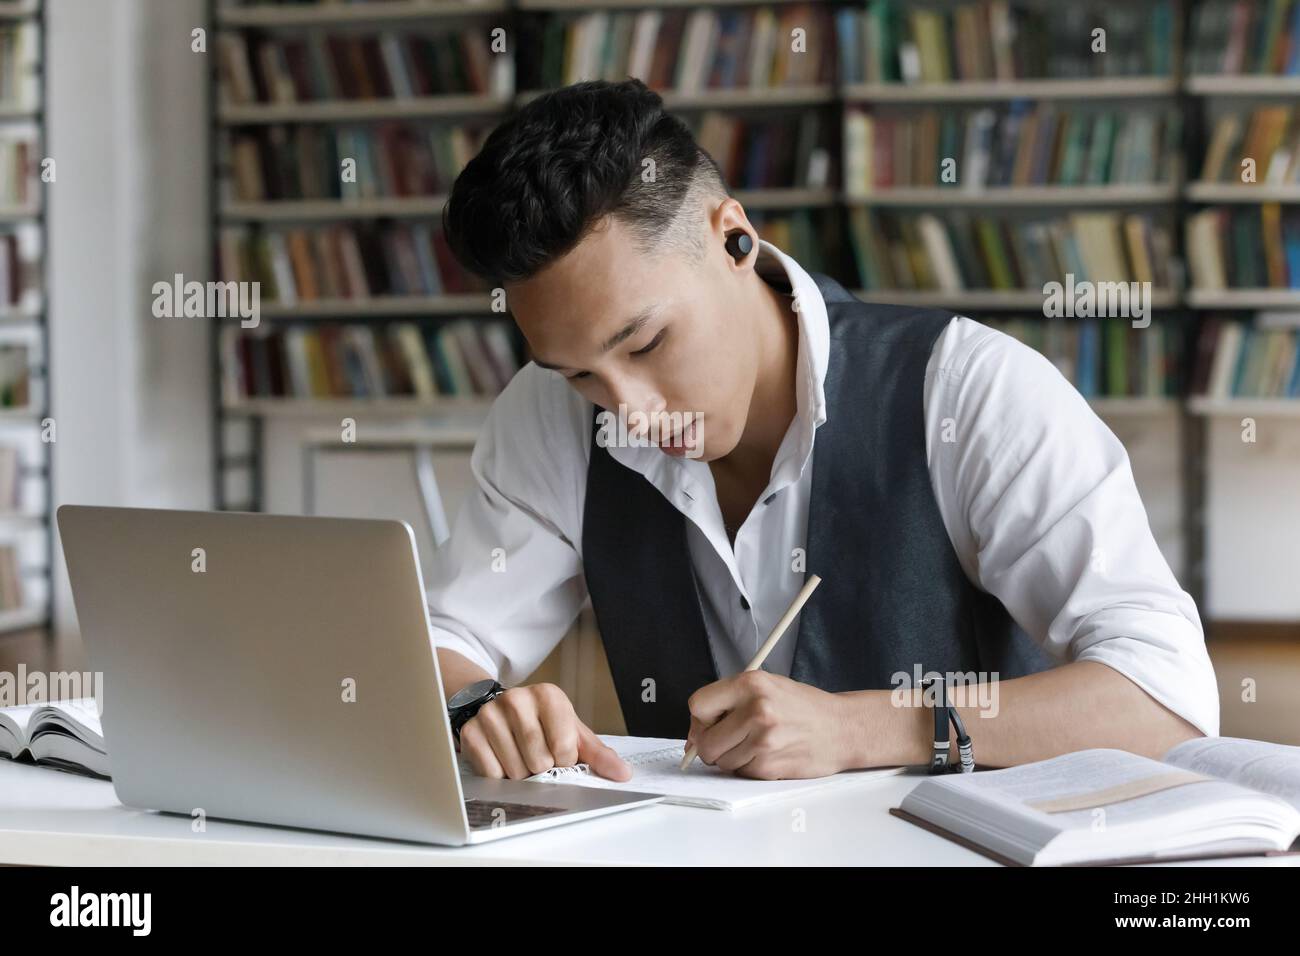 Un étudiant asiatique sérieux et concentré avec des écouteurs sans fil pour écrire des notes Banque D'Images